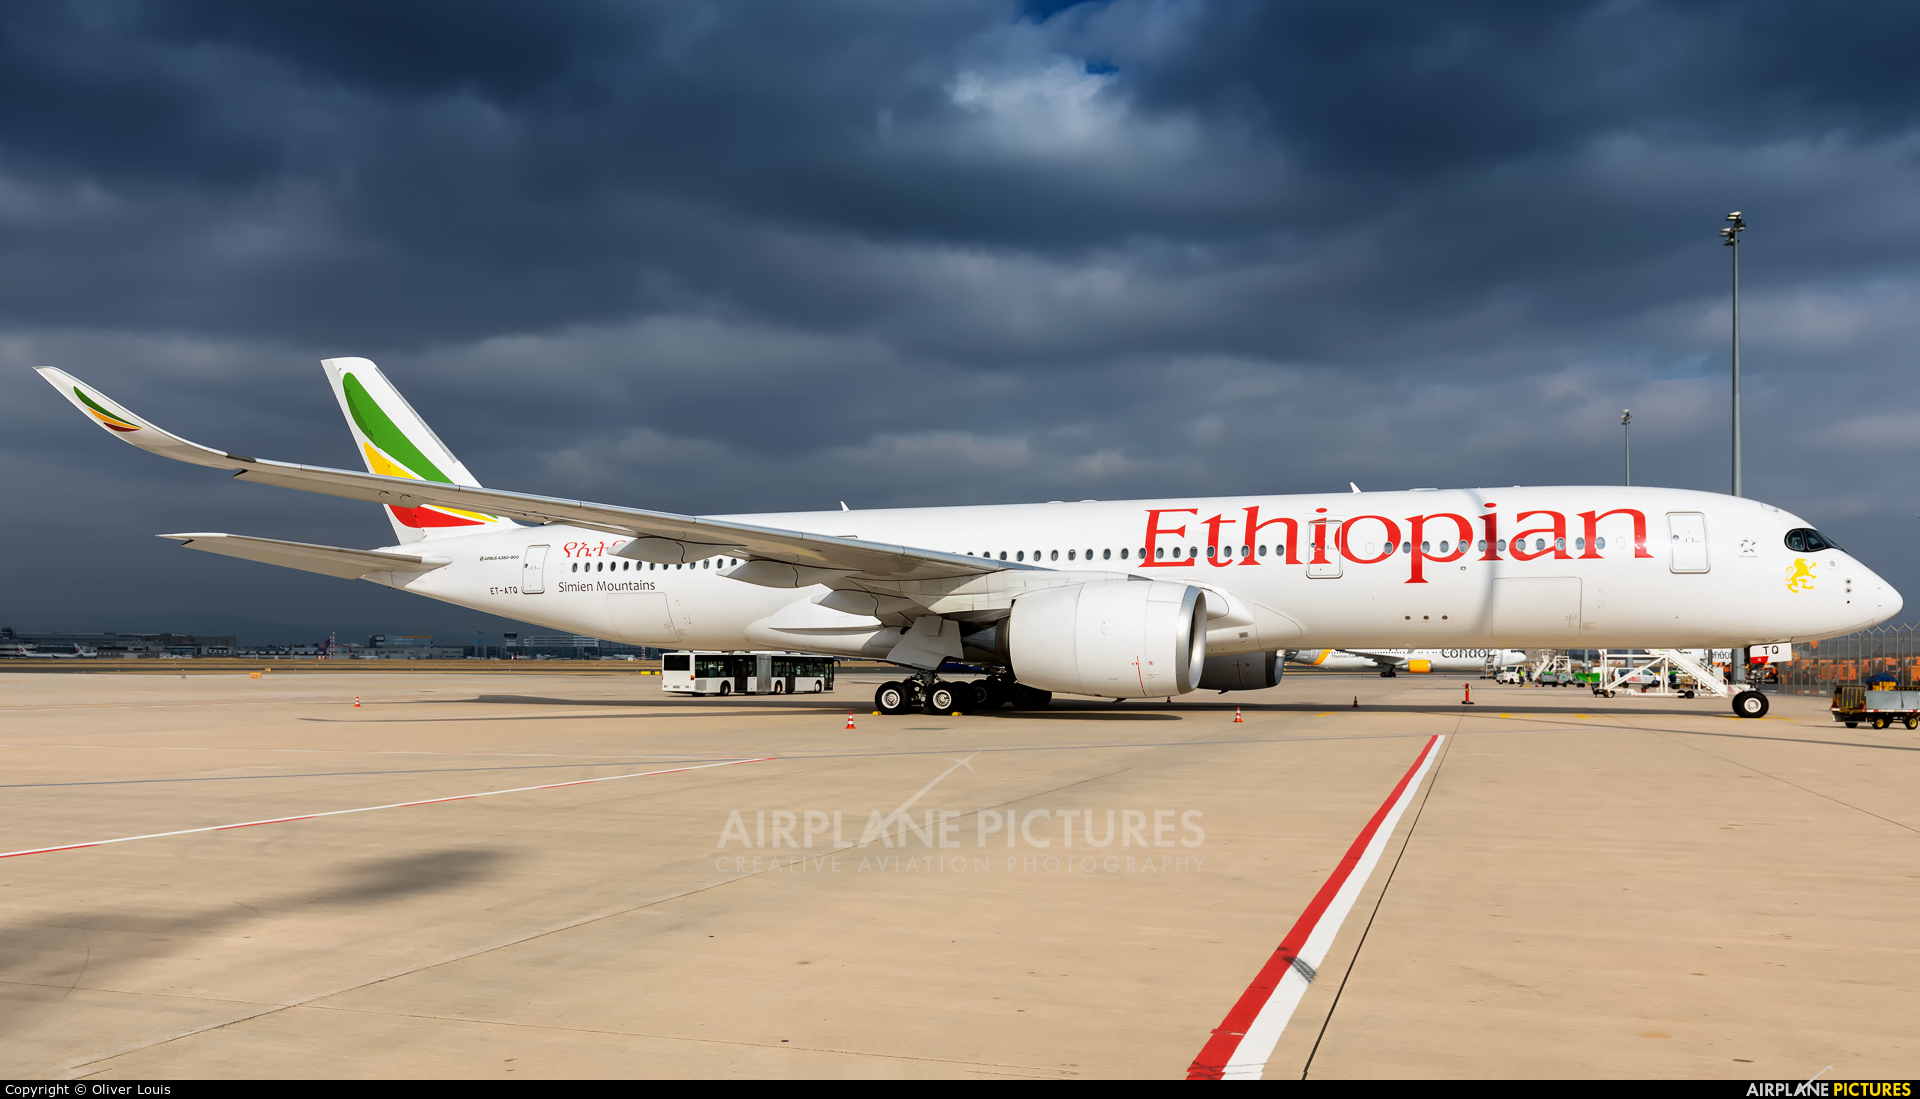 Ethiopian Airlines ET-ATQ aircraft at Frankfurt